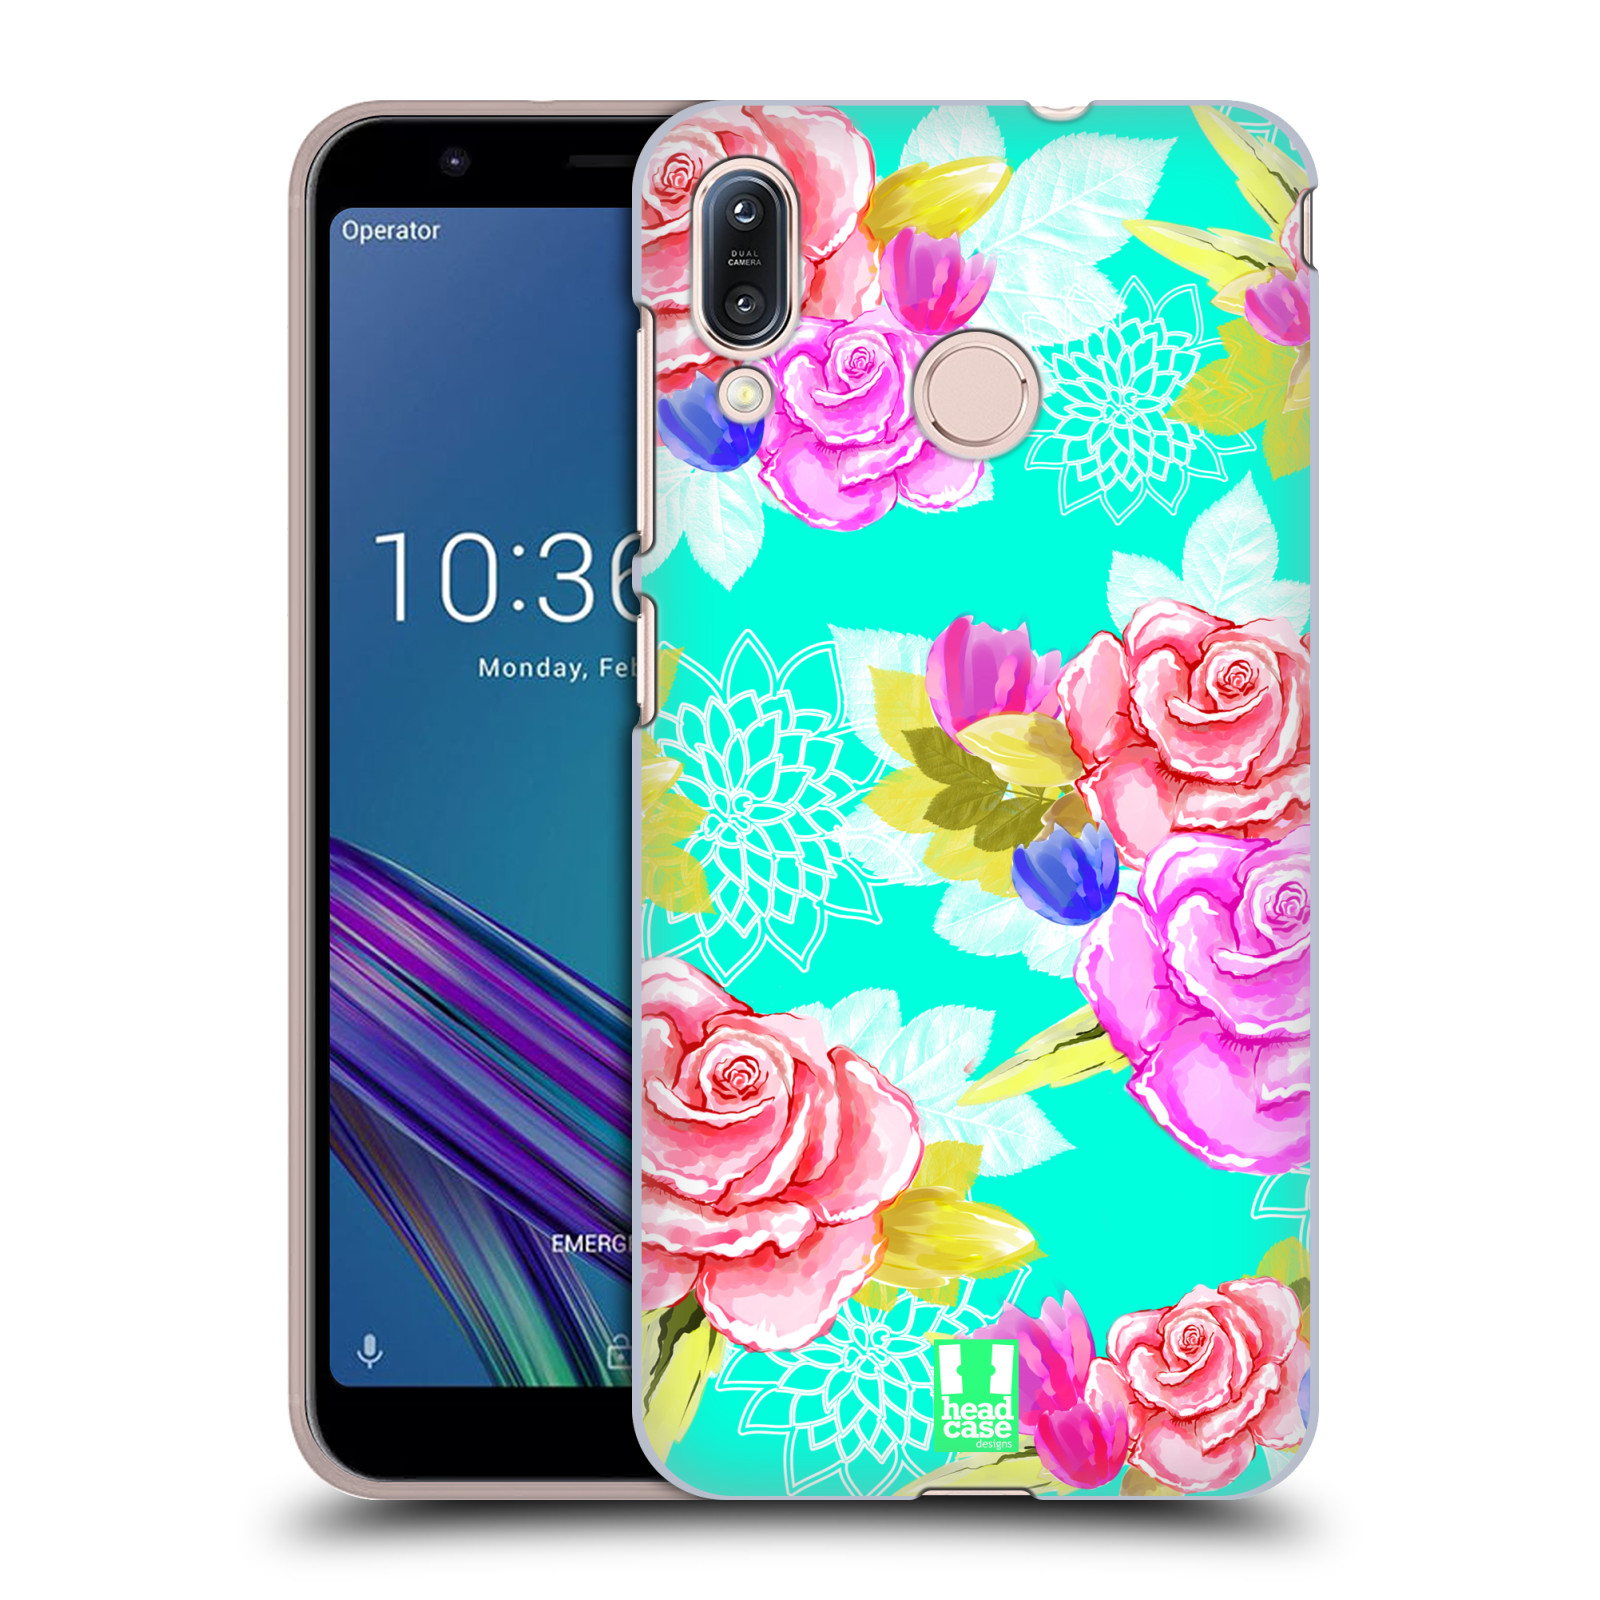 Pouzdro na mobil Asus Zenfone Max M1 (ZB555KL) - HEAD CASE - vzor Malované květiny barevné AQUA MODRÁ